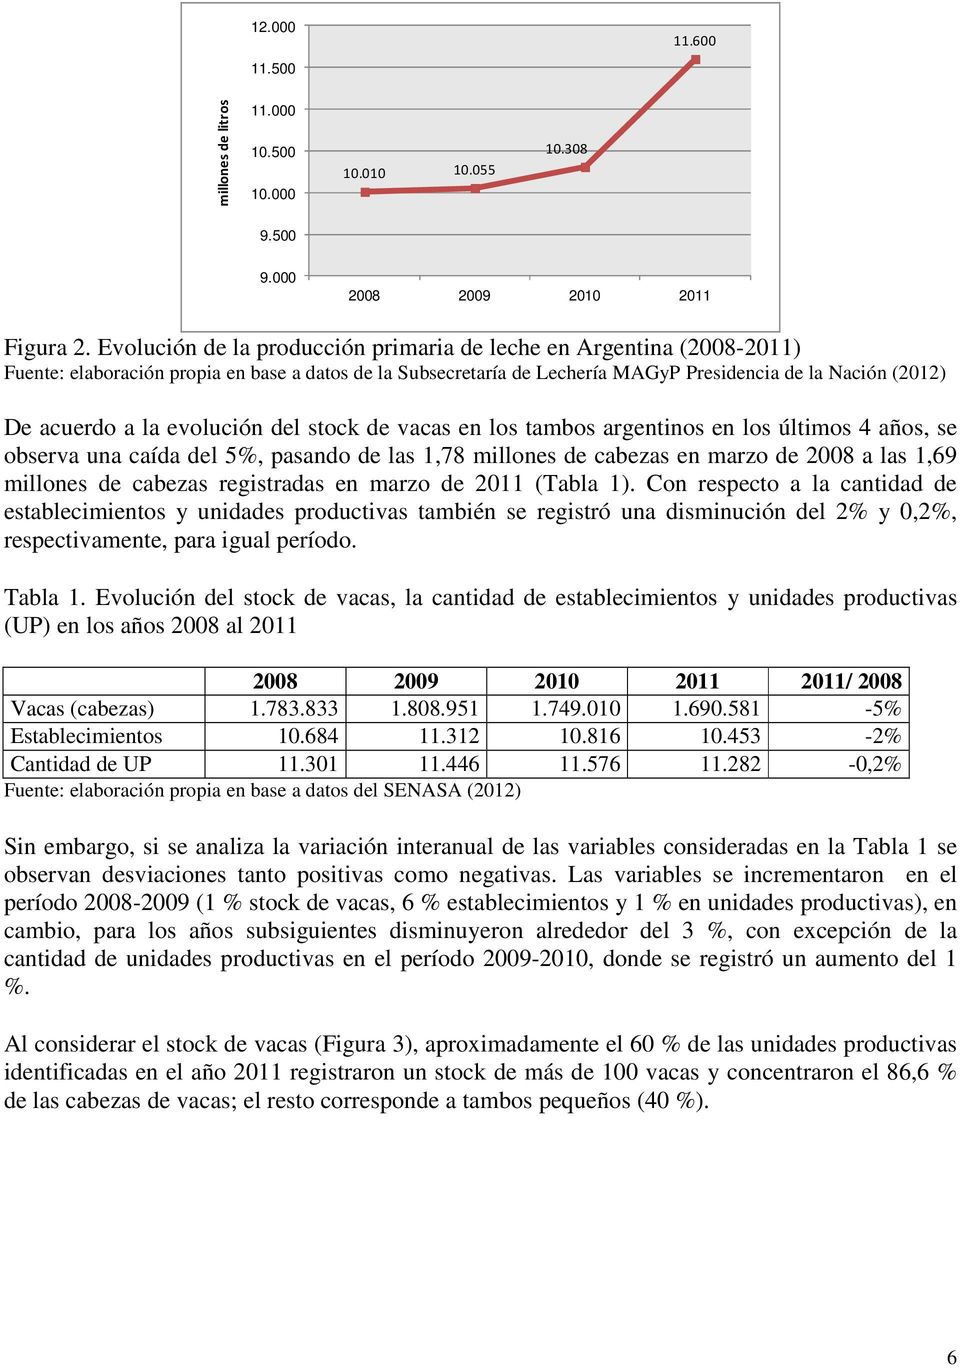 evolución del stock de en los tambos argentinos en los últimos 4 años, se observa una caída del 5%, pasando de las 1,78 millones de cabezas en marzo de 2008 a las 1,69 millones de cabezas registradas